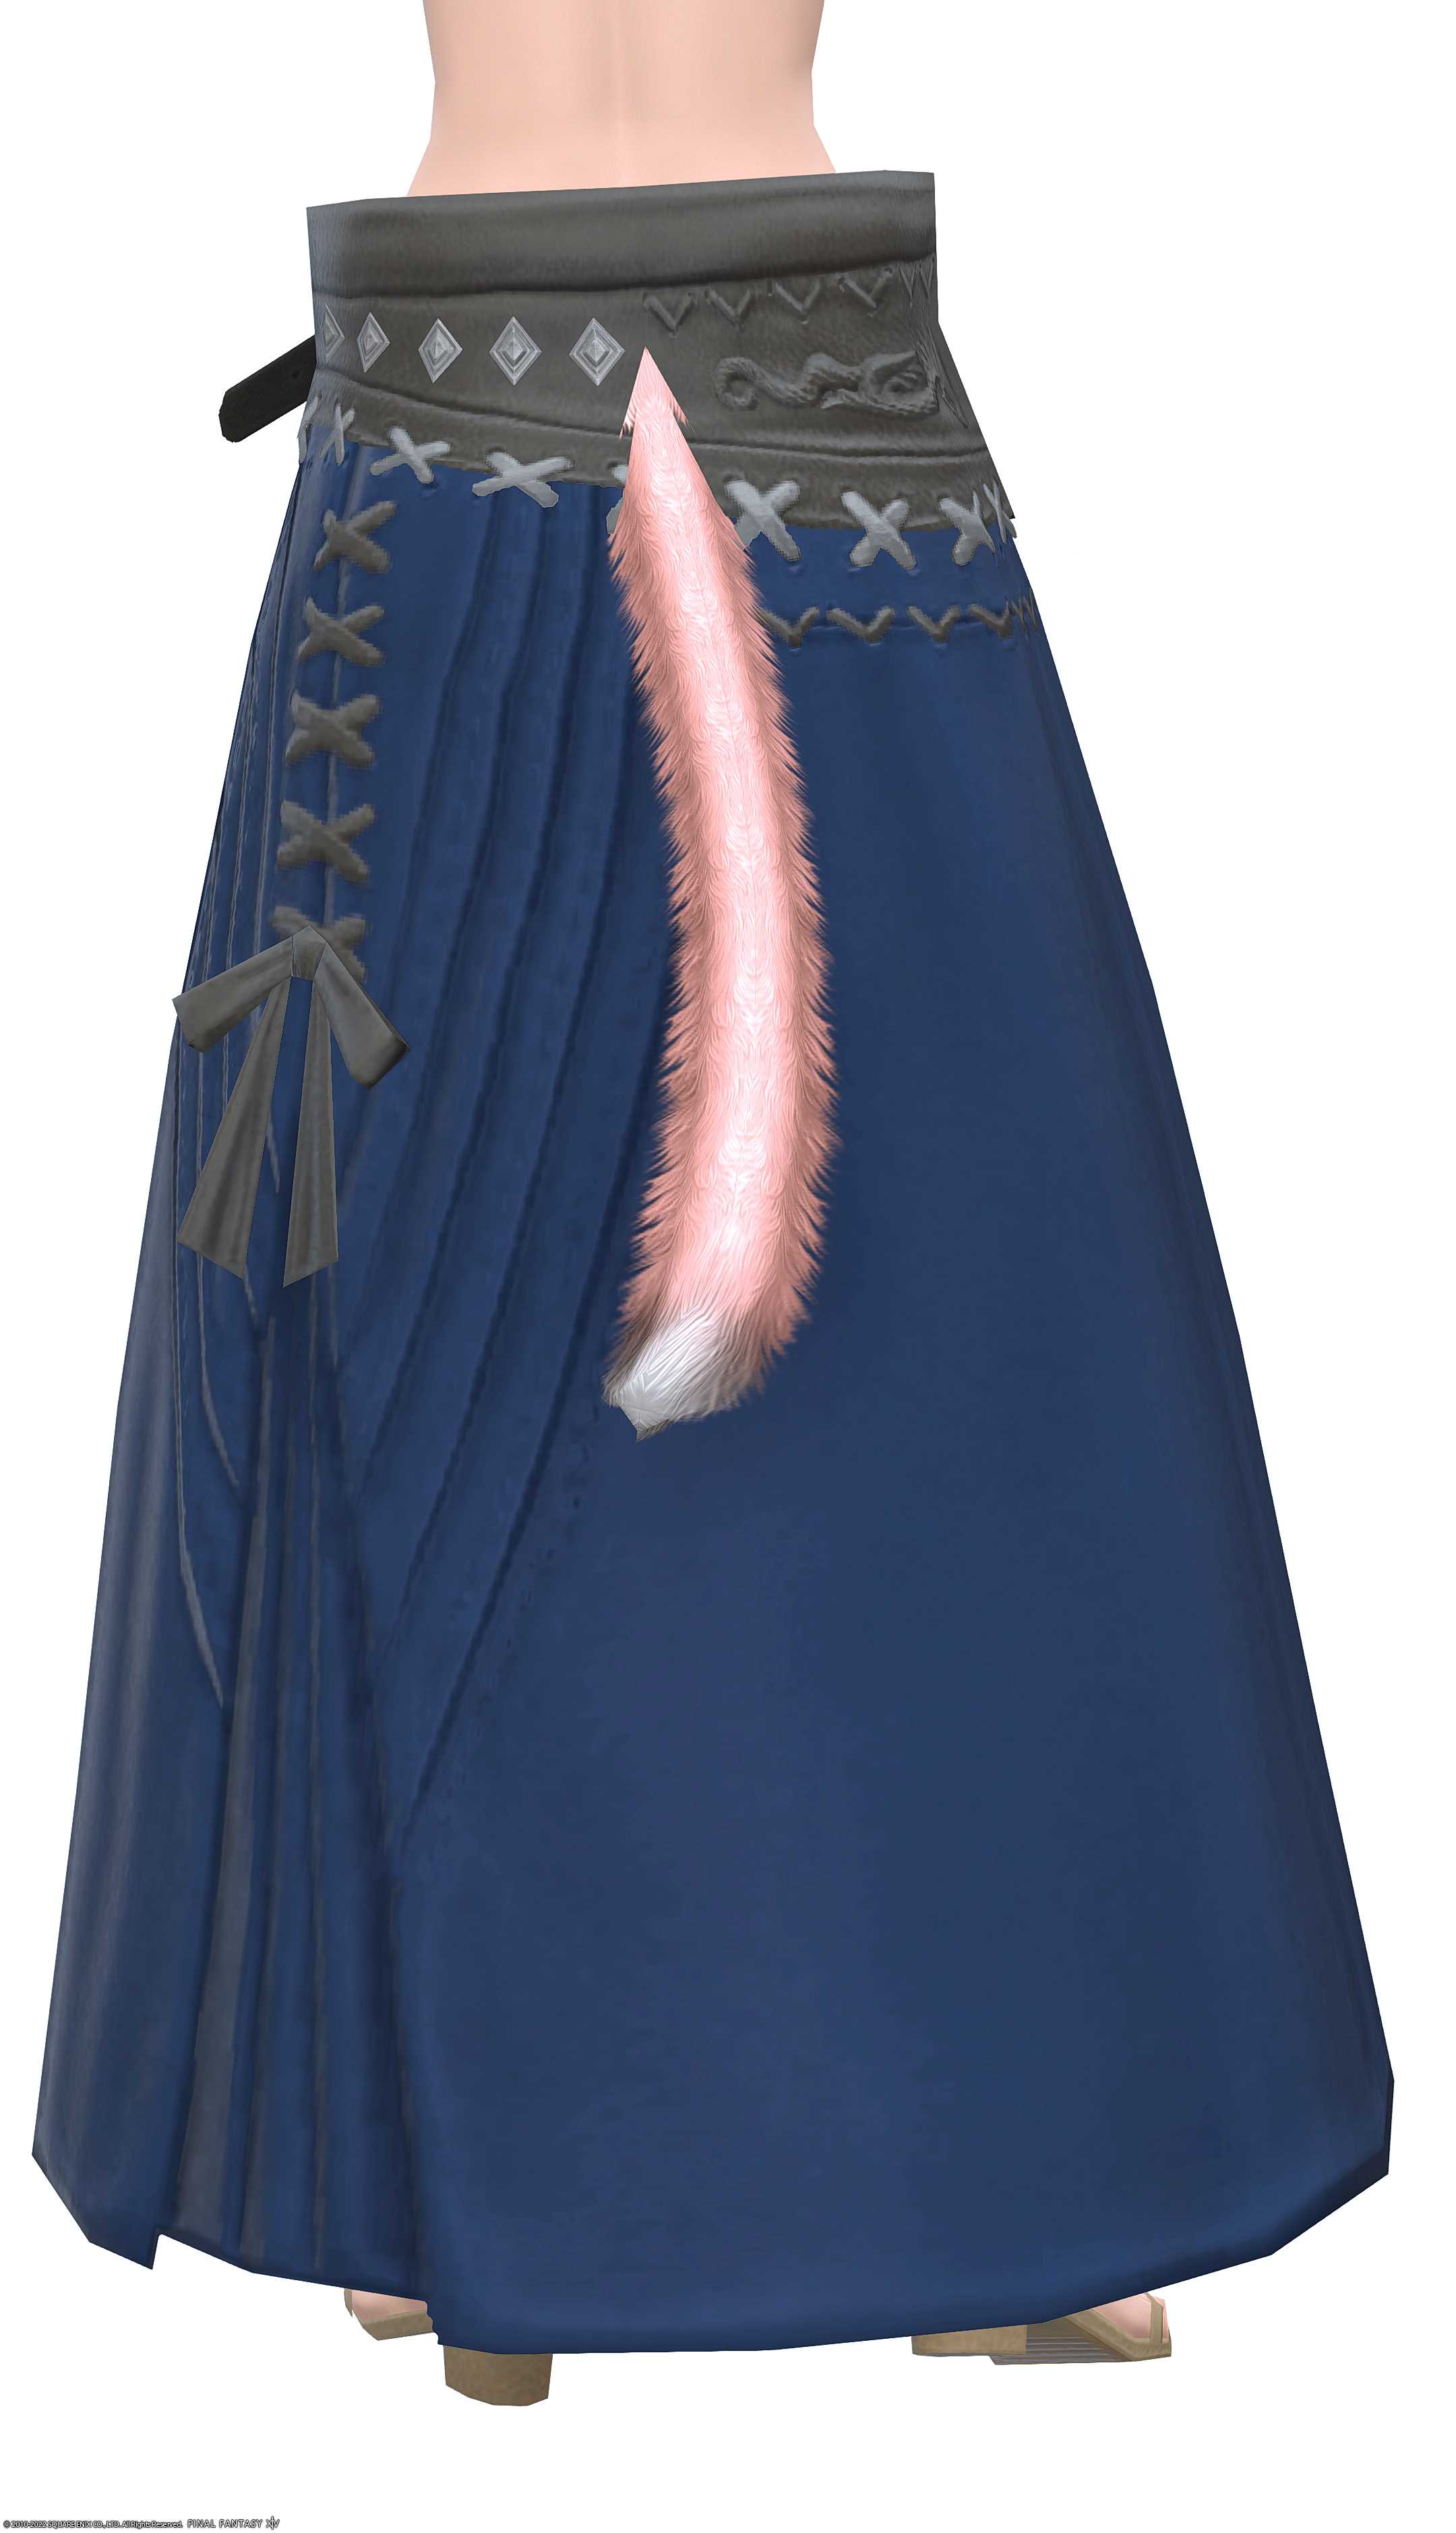 オーソドックス・ヒーラーロングキルト | FF14ミラプリ - Orthodox Longkilt of Healing - スカート